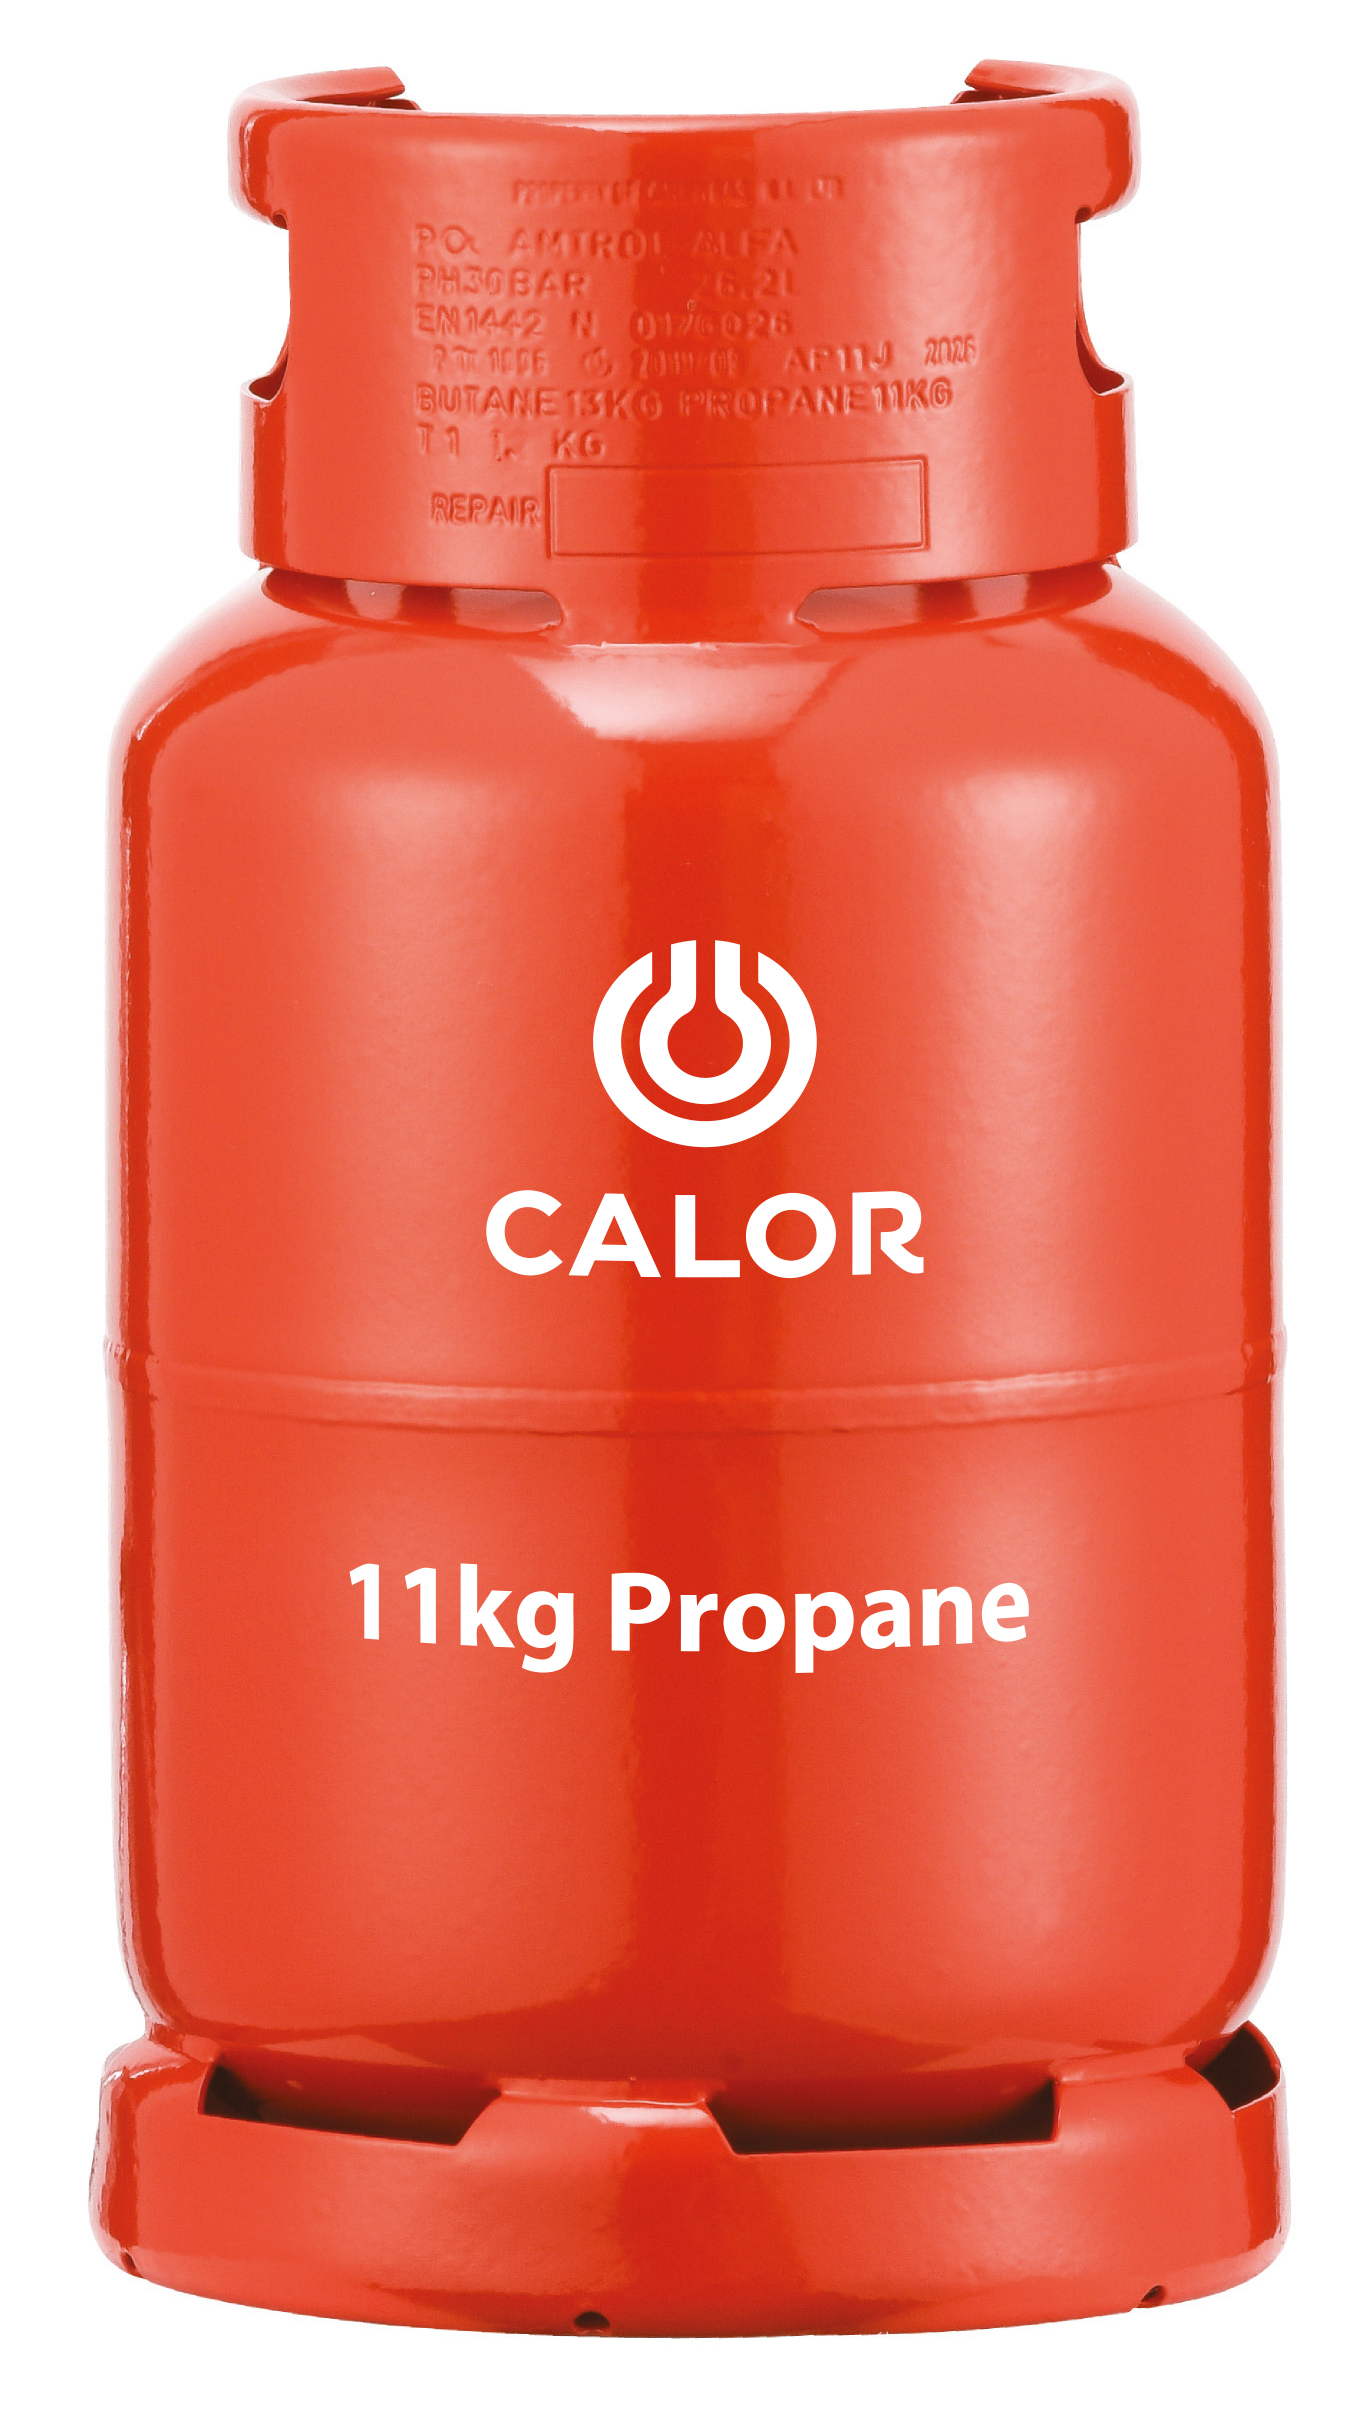 11kg Propane gas bottle